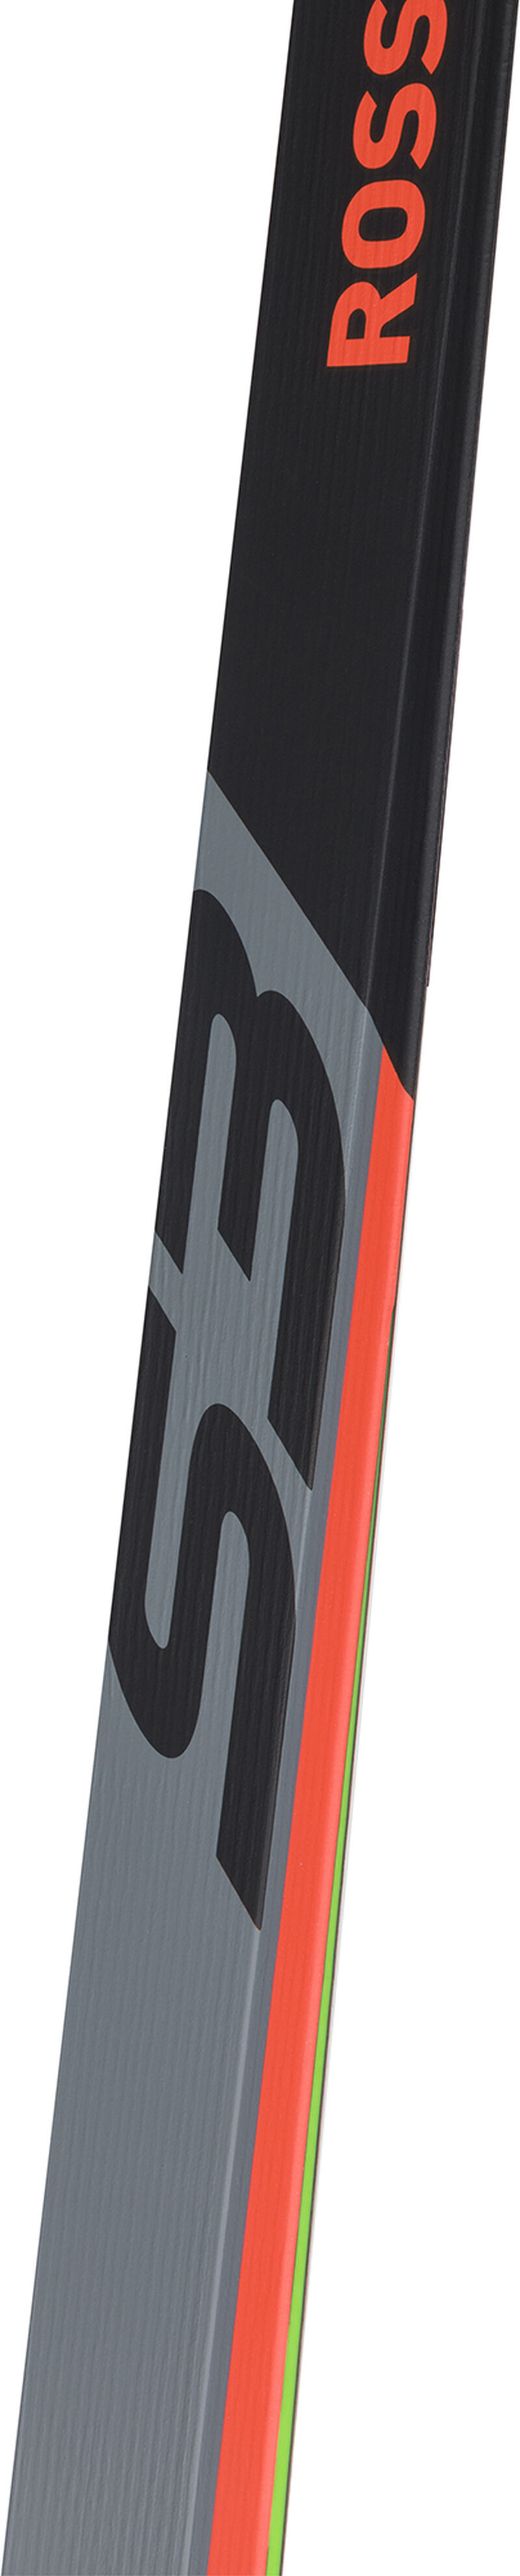 Unisex Nordic Racing Skis X-IUM SKATING PREMIUM+S3 STIFF